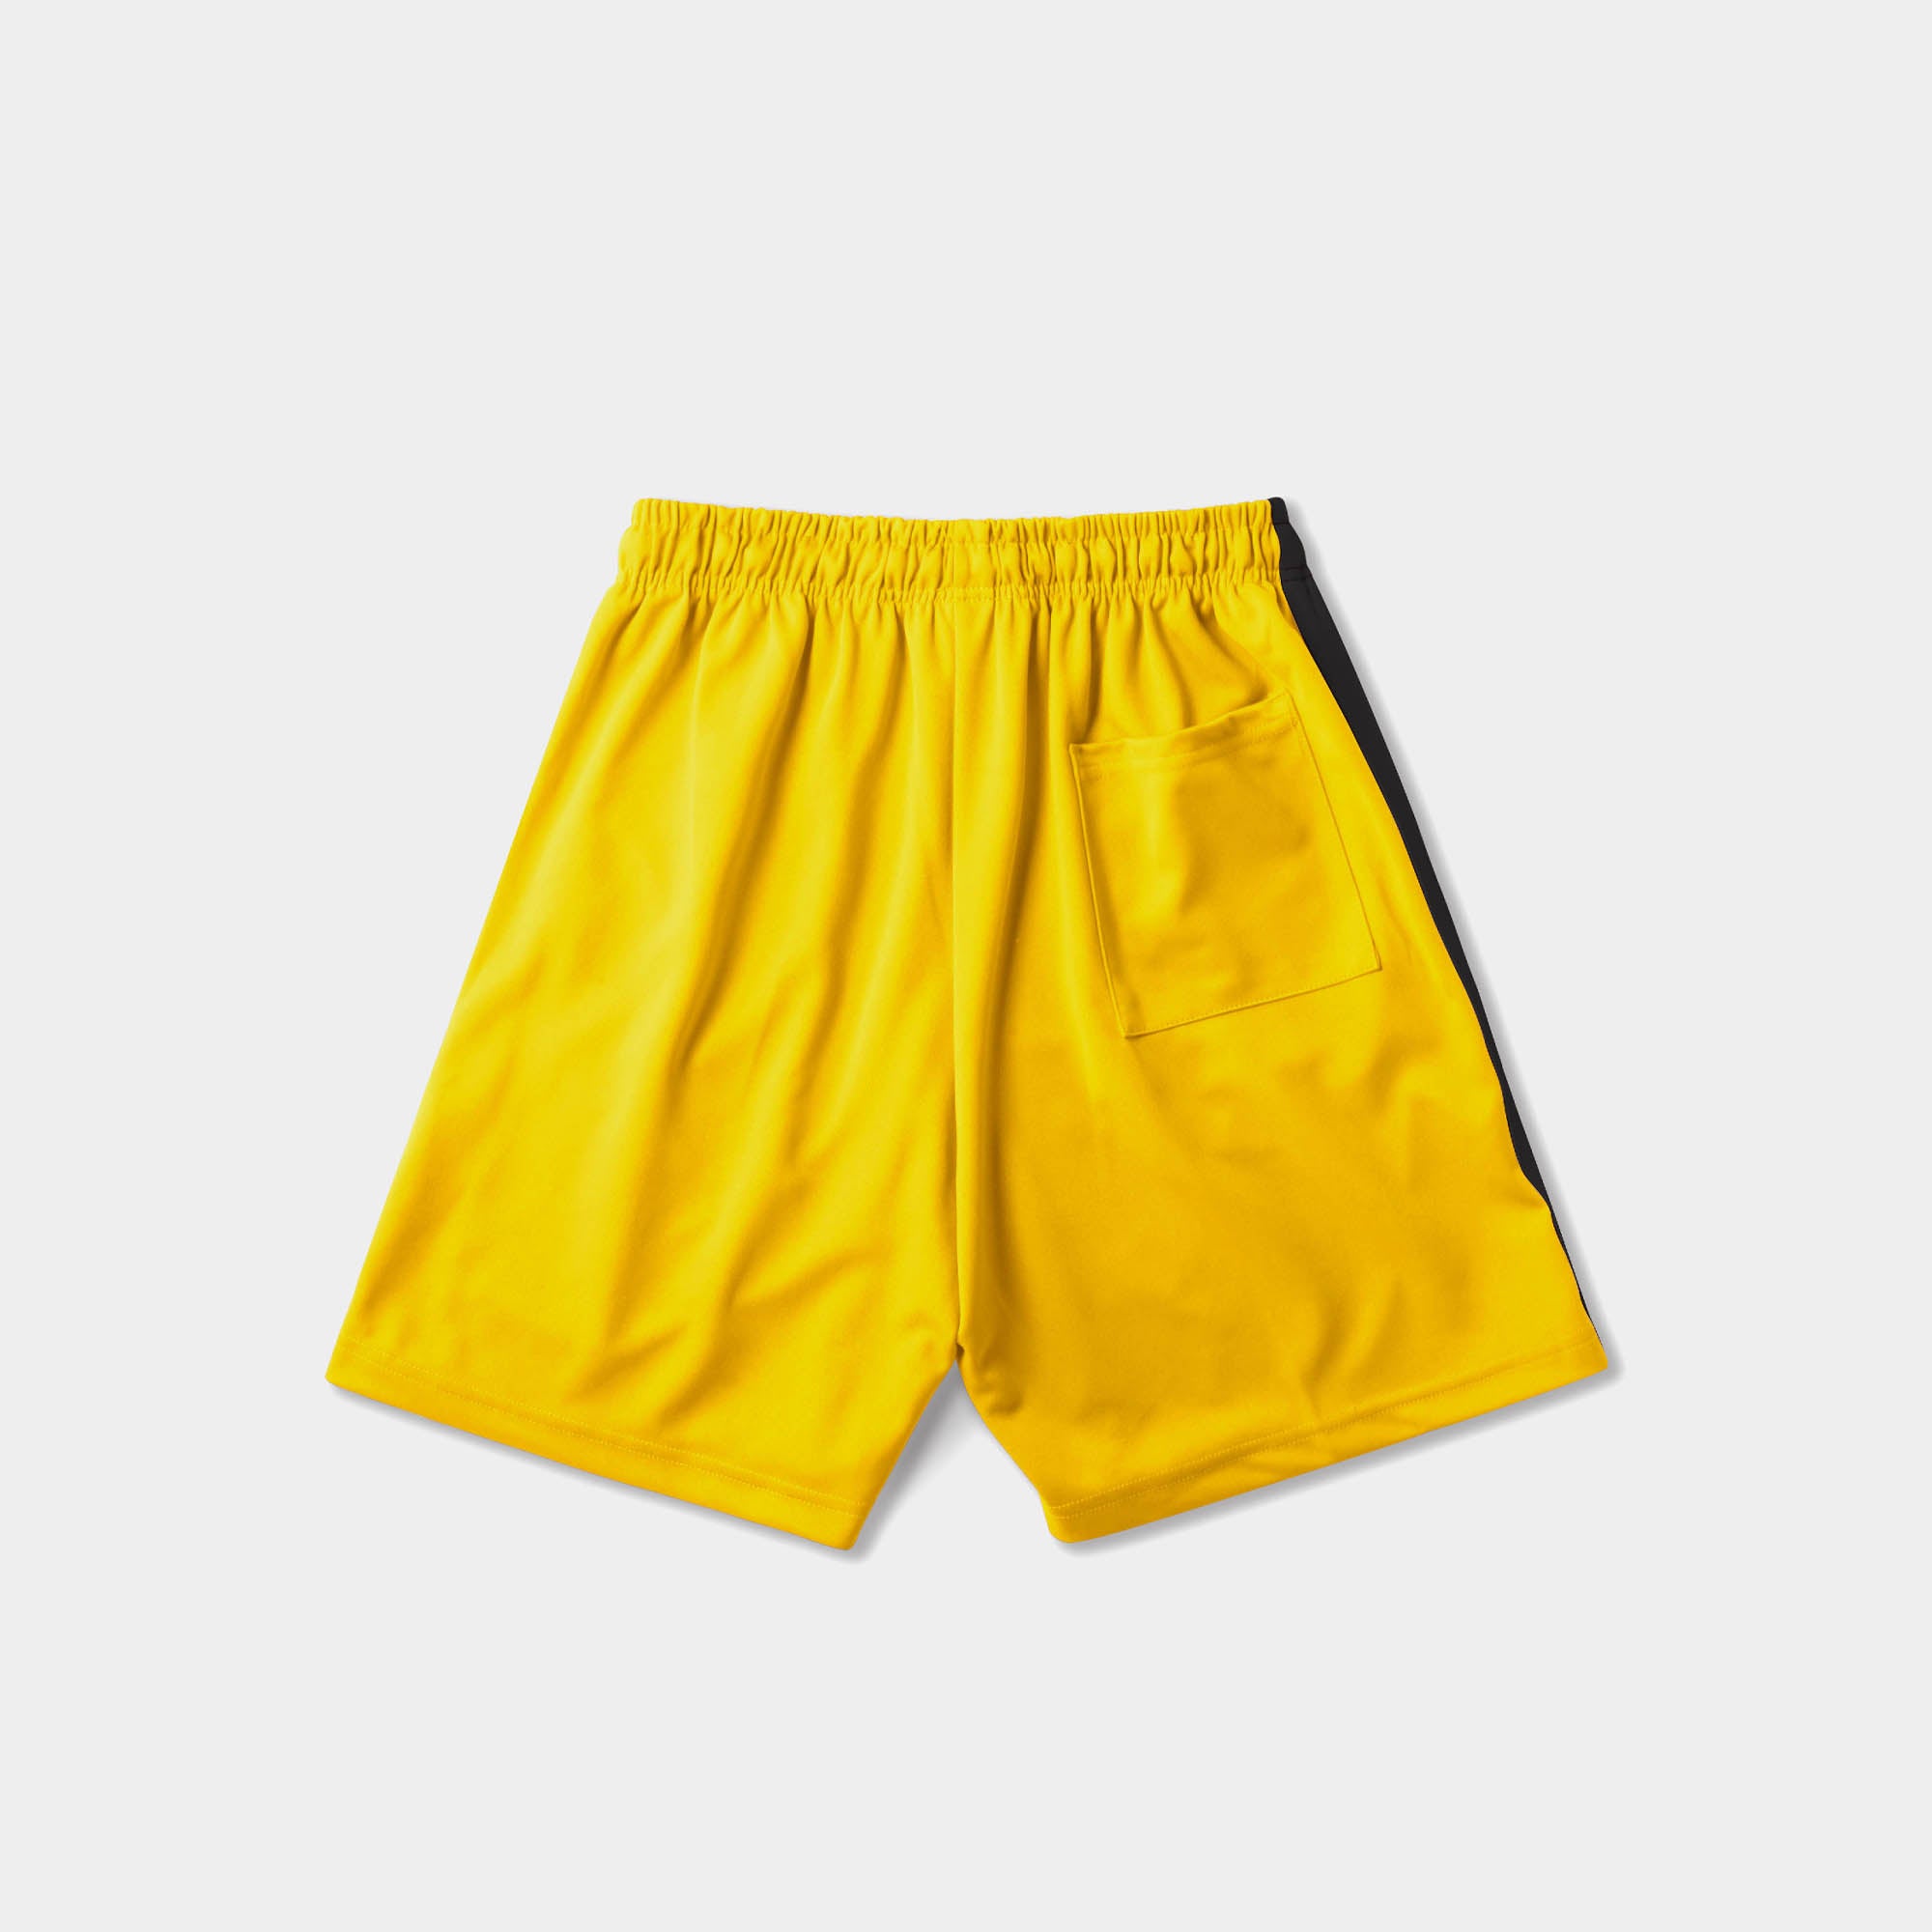 track shorts_track shorts mens_hind running shorts_boys track shorts_gucci shorts_gucci shorts mens_gucci shorts cheap_Yellow/Black